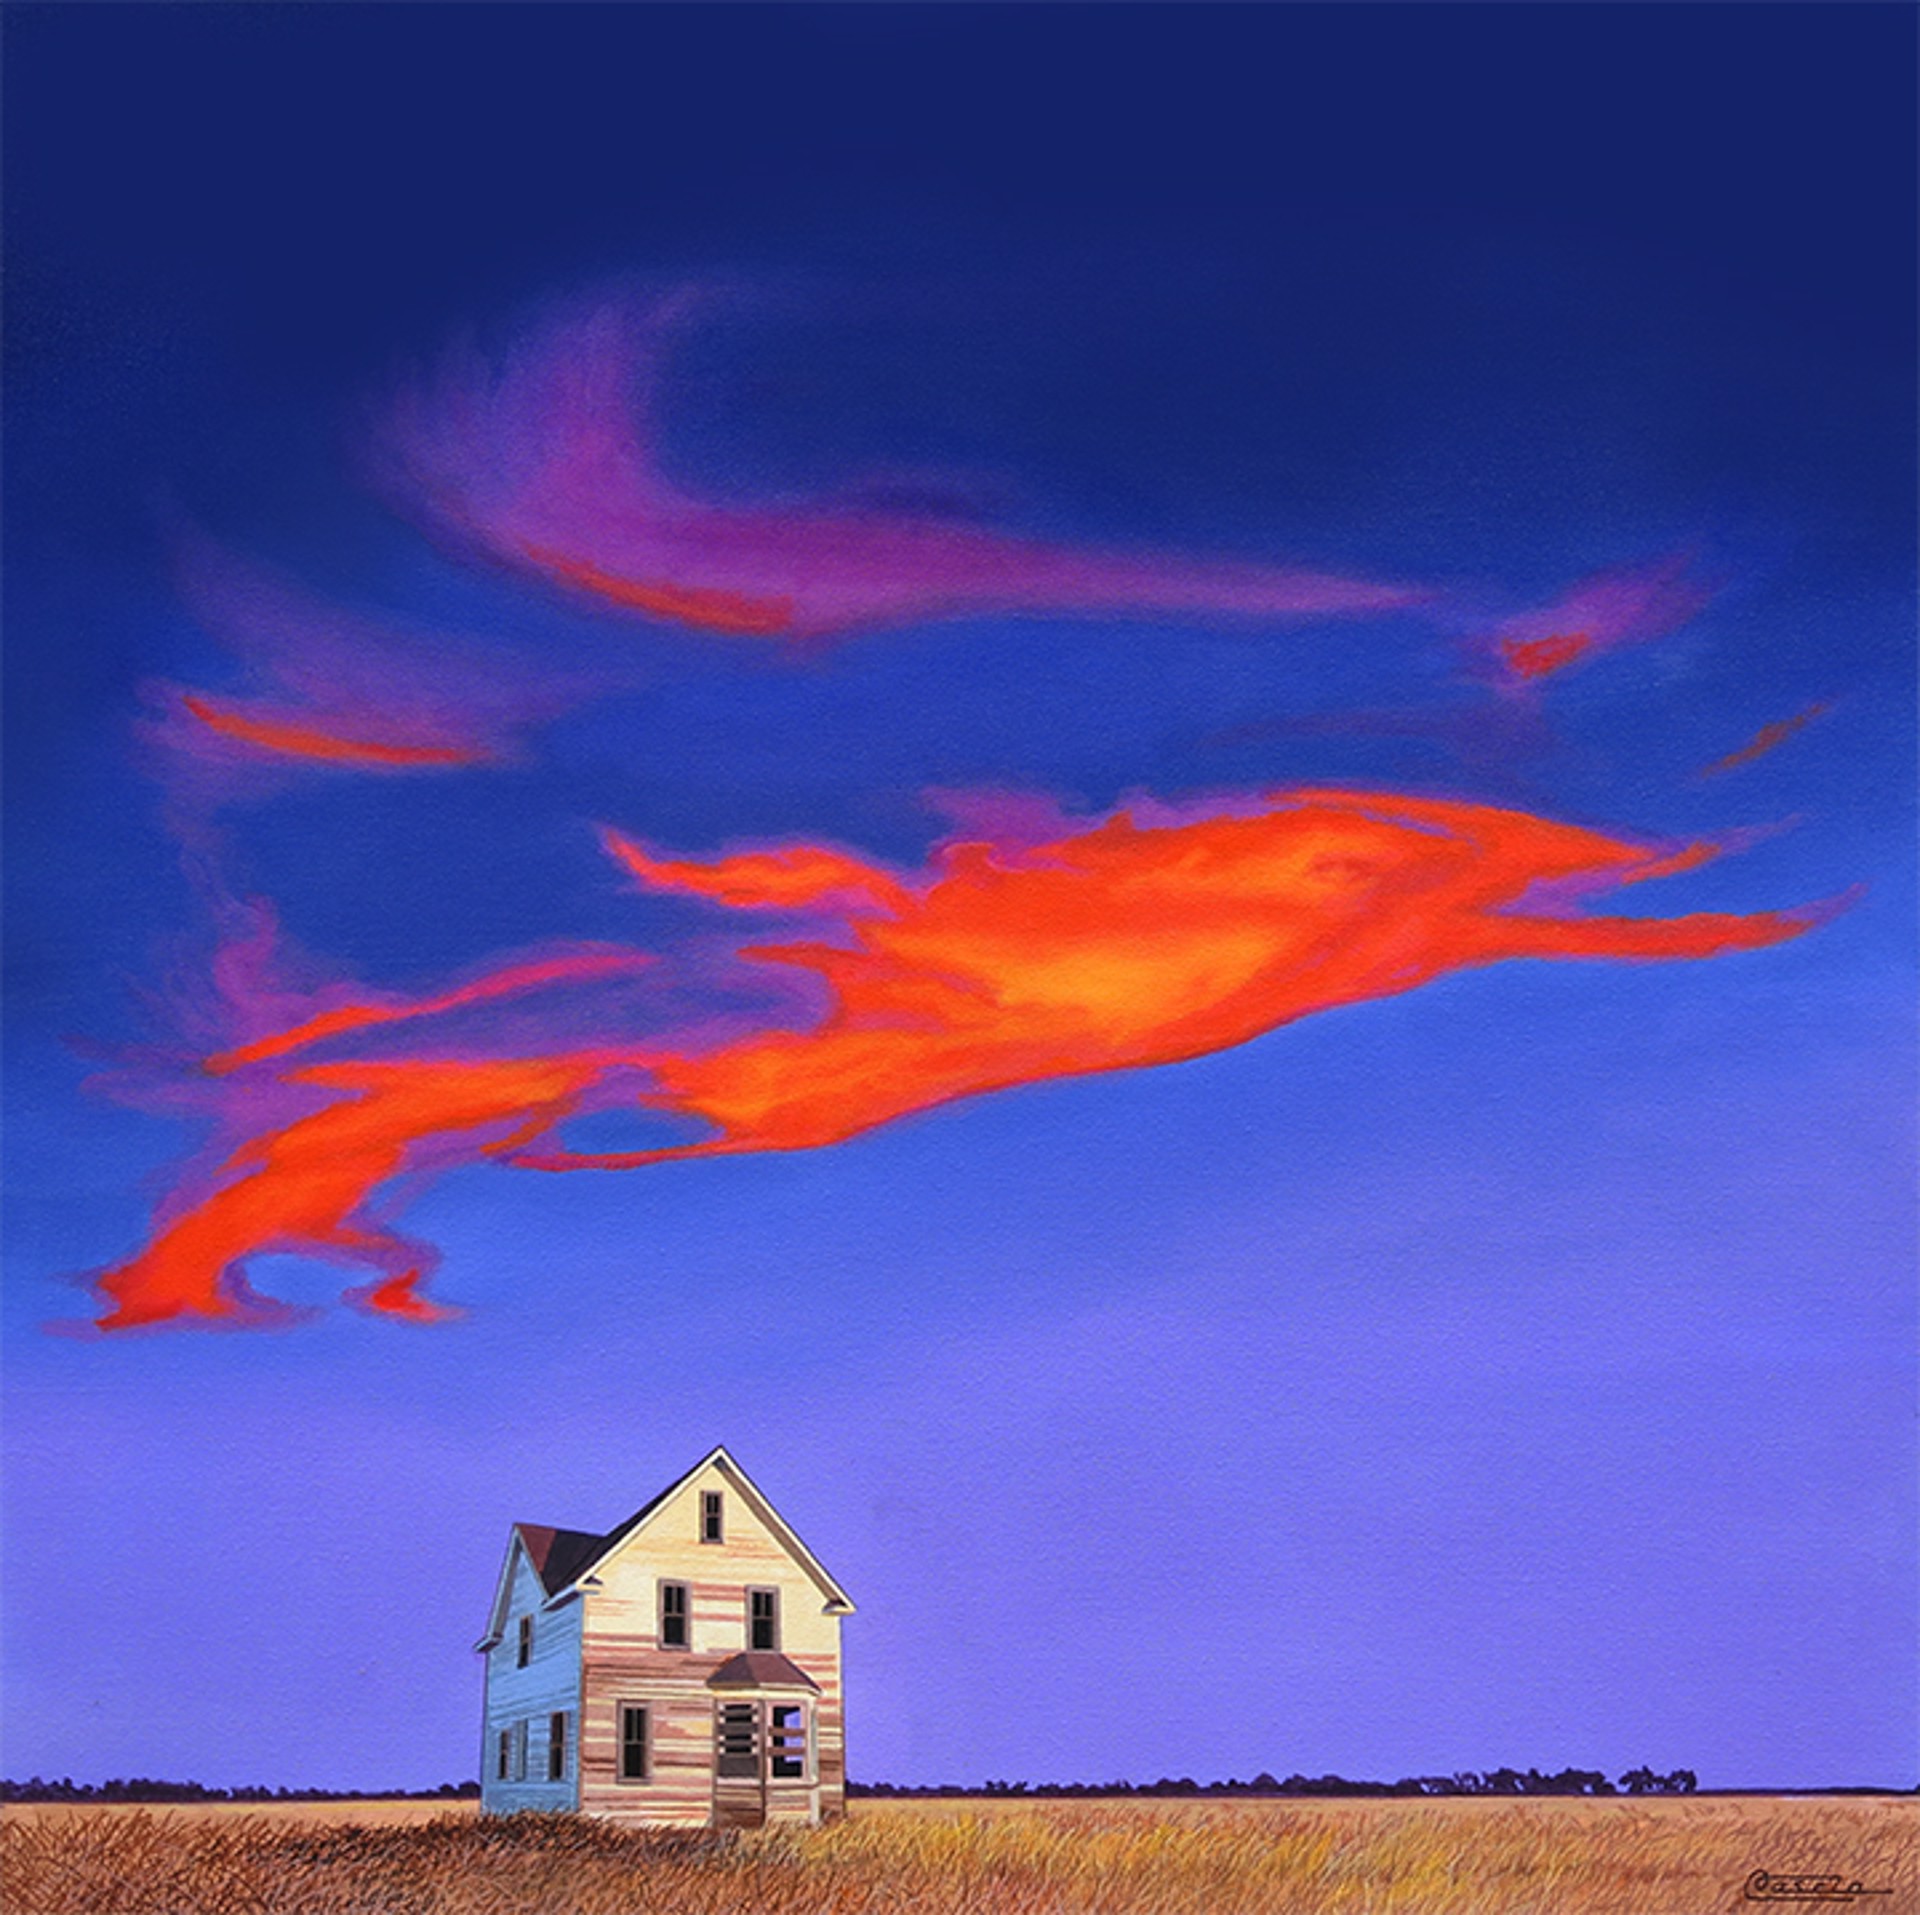 Fire in the Sky by Bruce Cascia